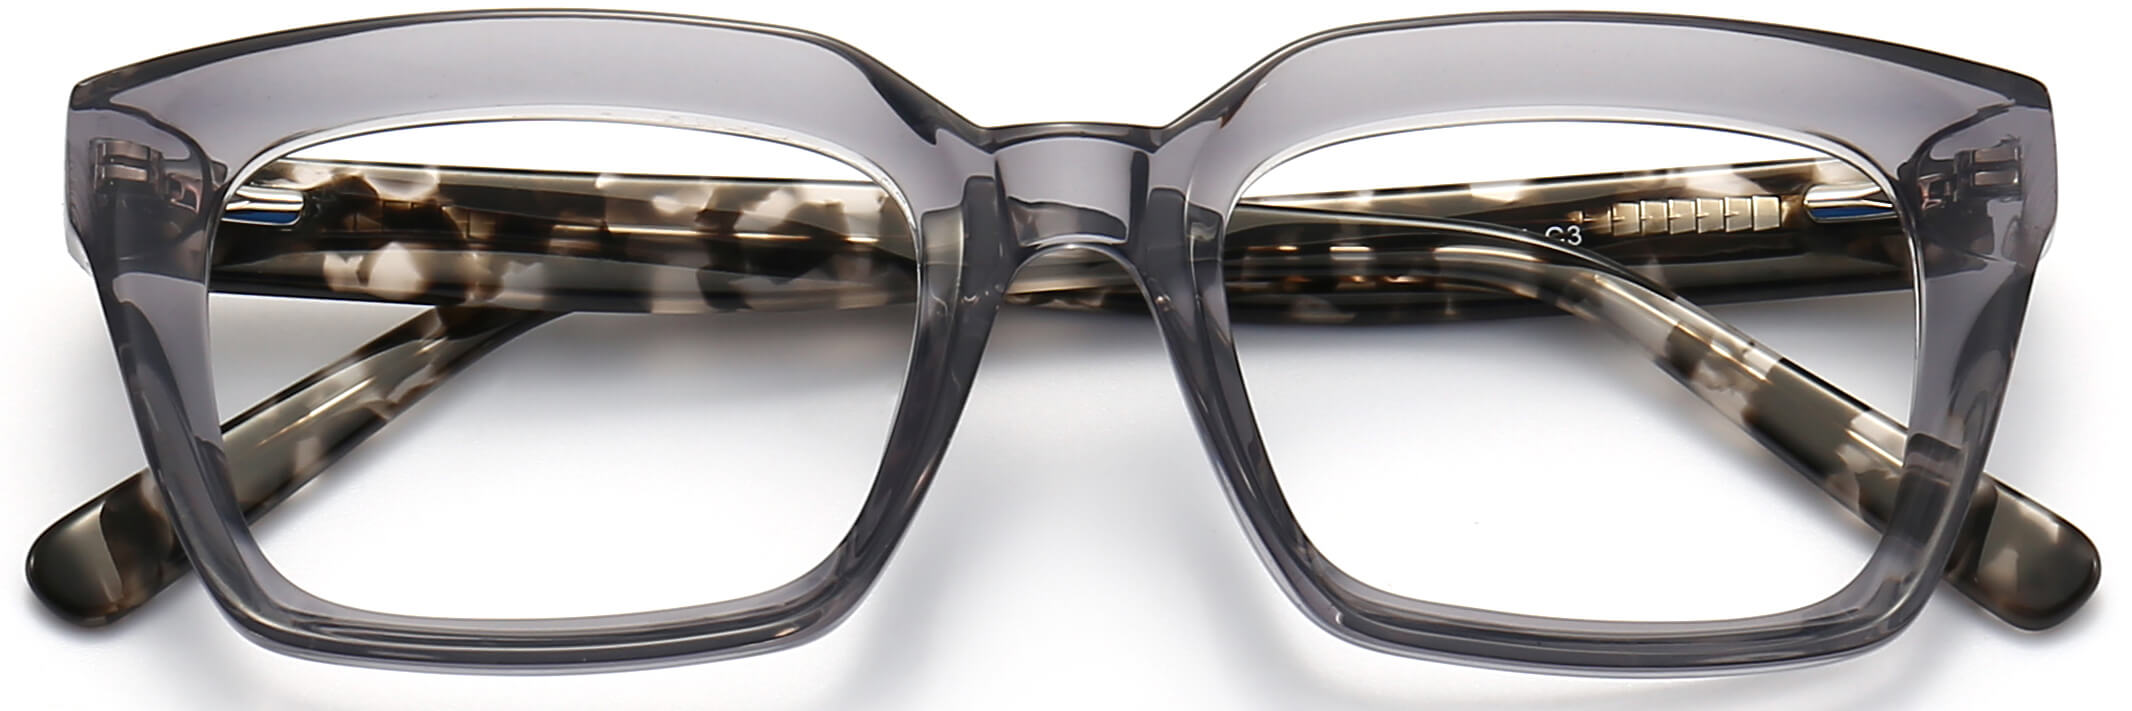 Mens Glasses & Eyeglass Frames